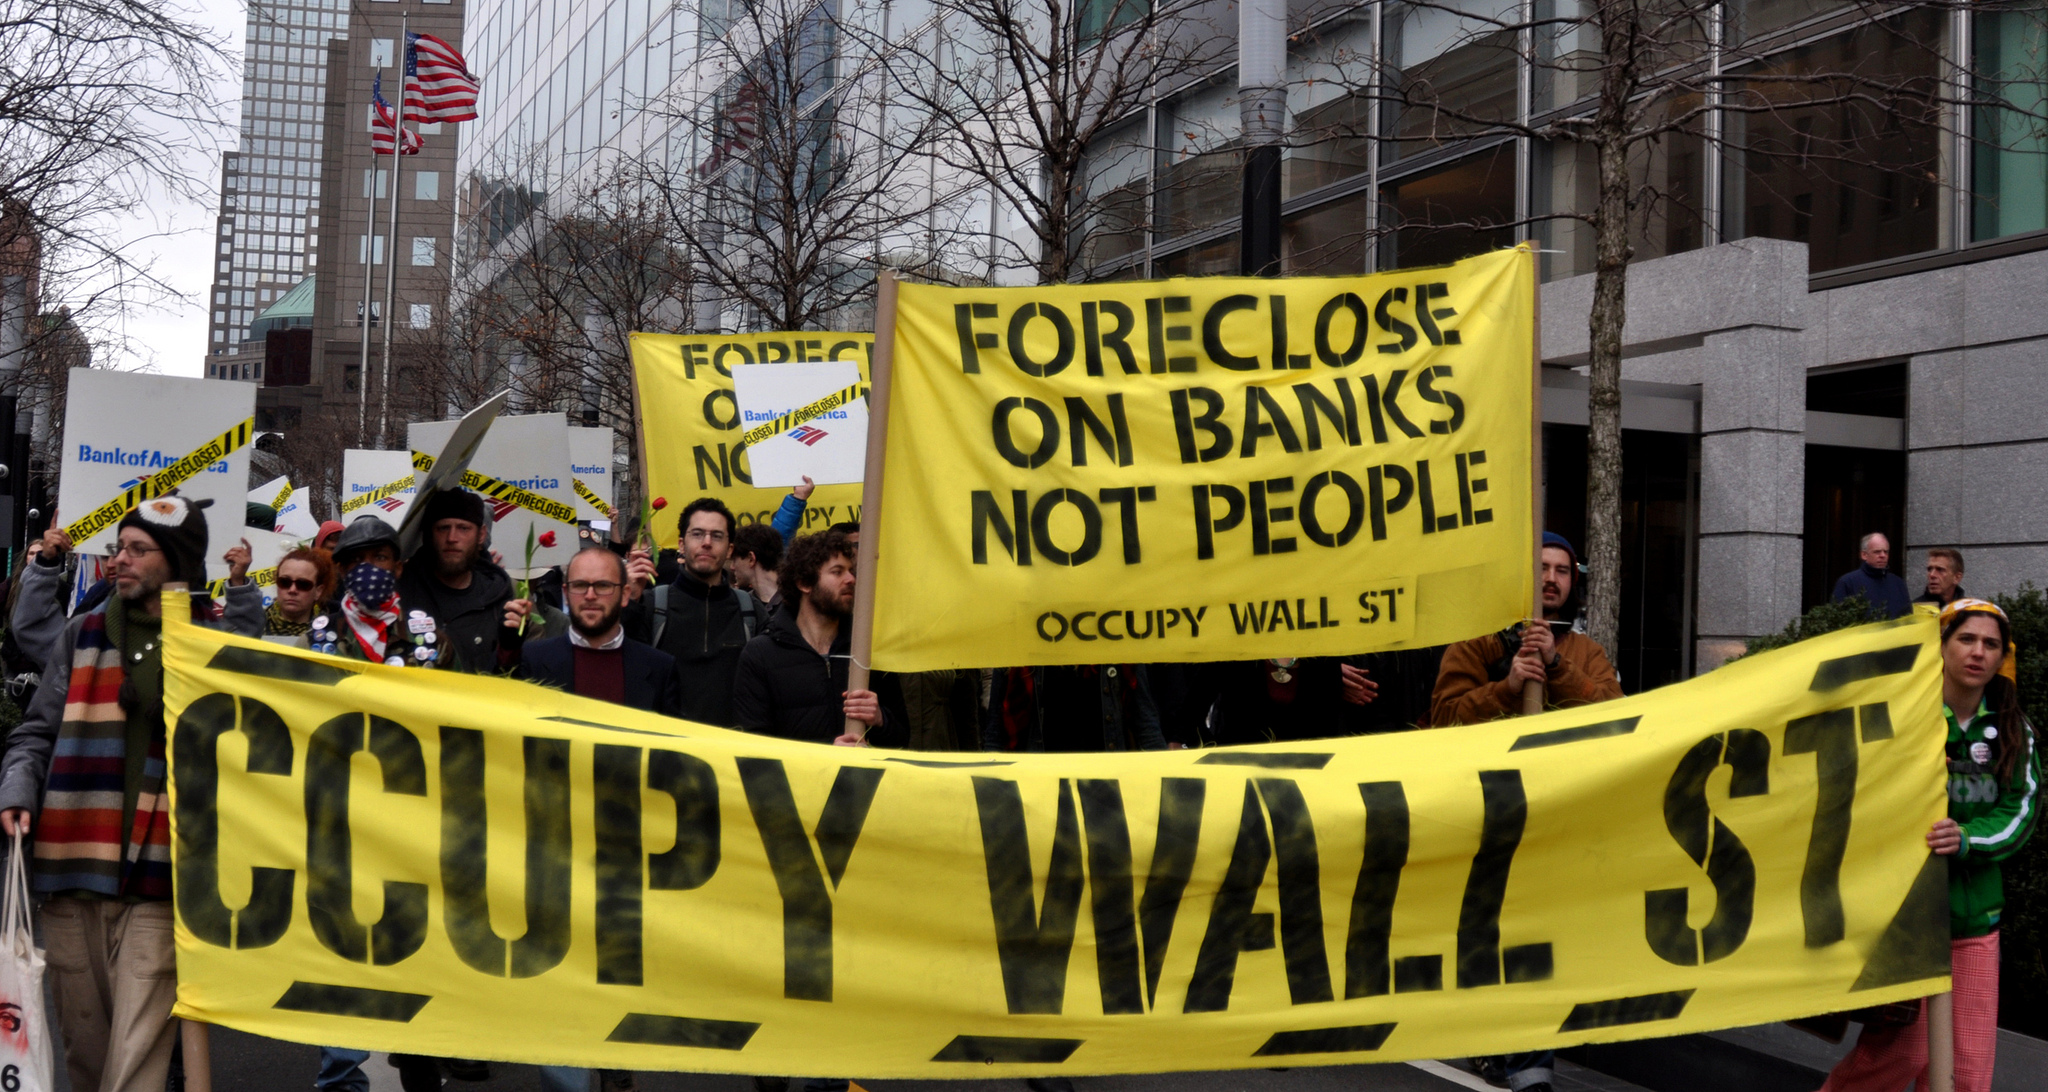 חברי תנועת Occupy Wall Street במהלך הפגנה, ניו יורק, ספטמבר 2011 (צילום: Michael Fleshman, flickr)